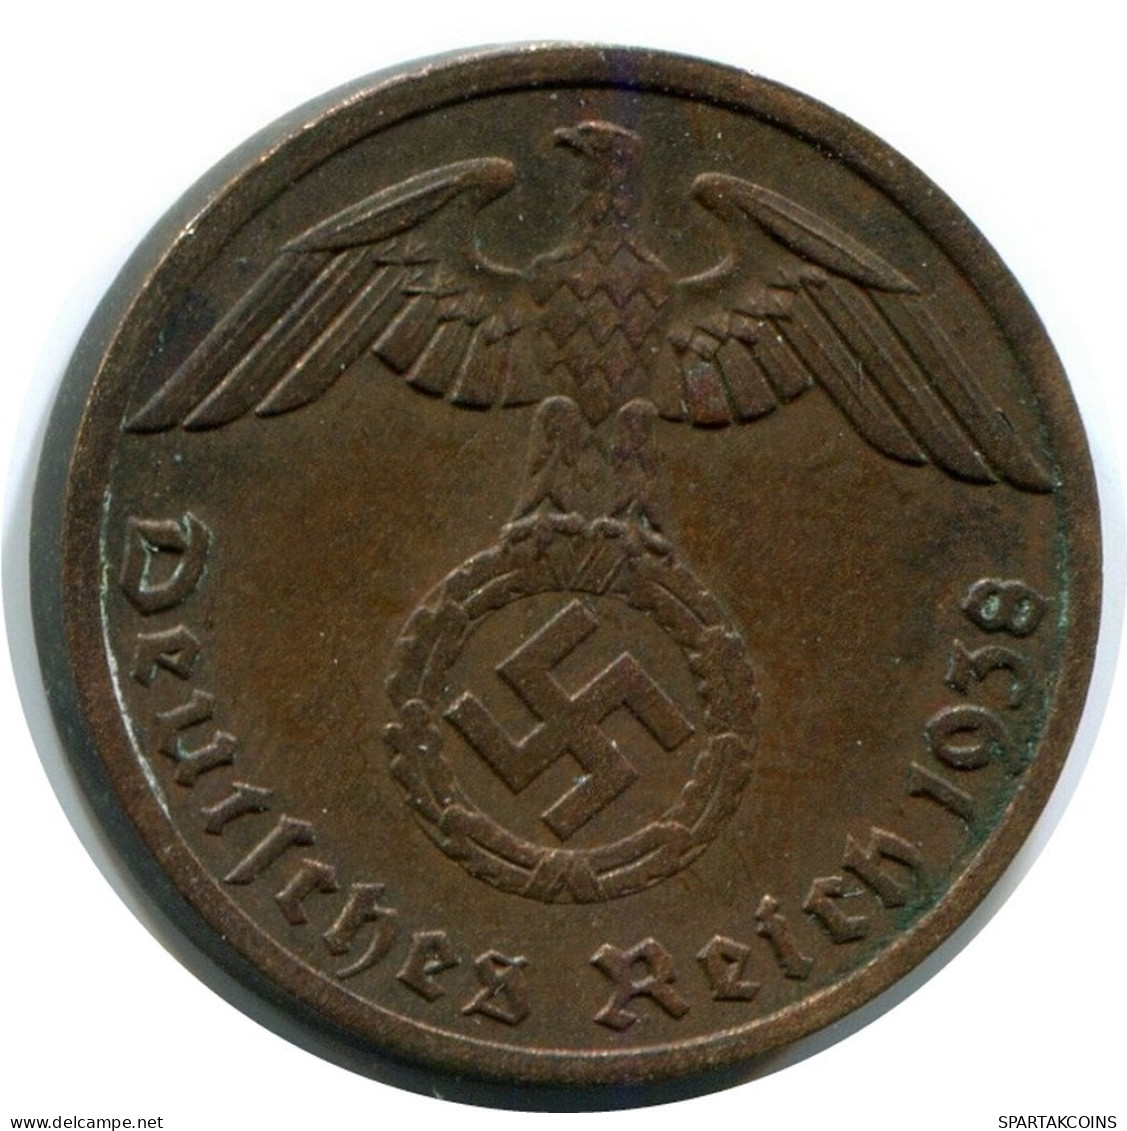 1 REICHSPFENNIG 1938 A DEUTSCHLAND Münze GERMANY #AX397.D.A - 1 Reichspfennig